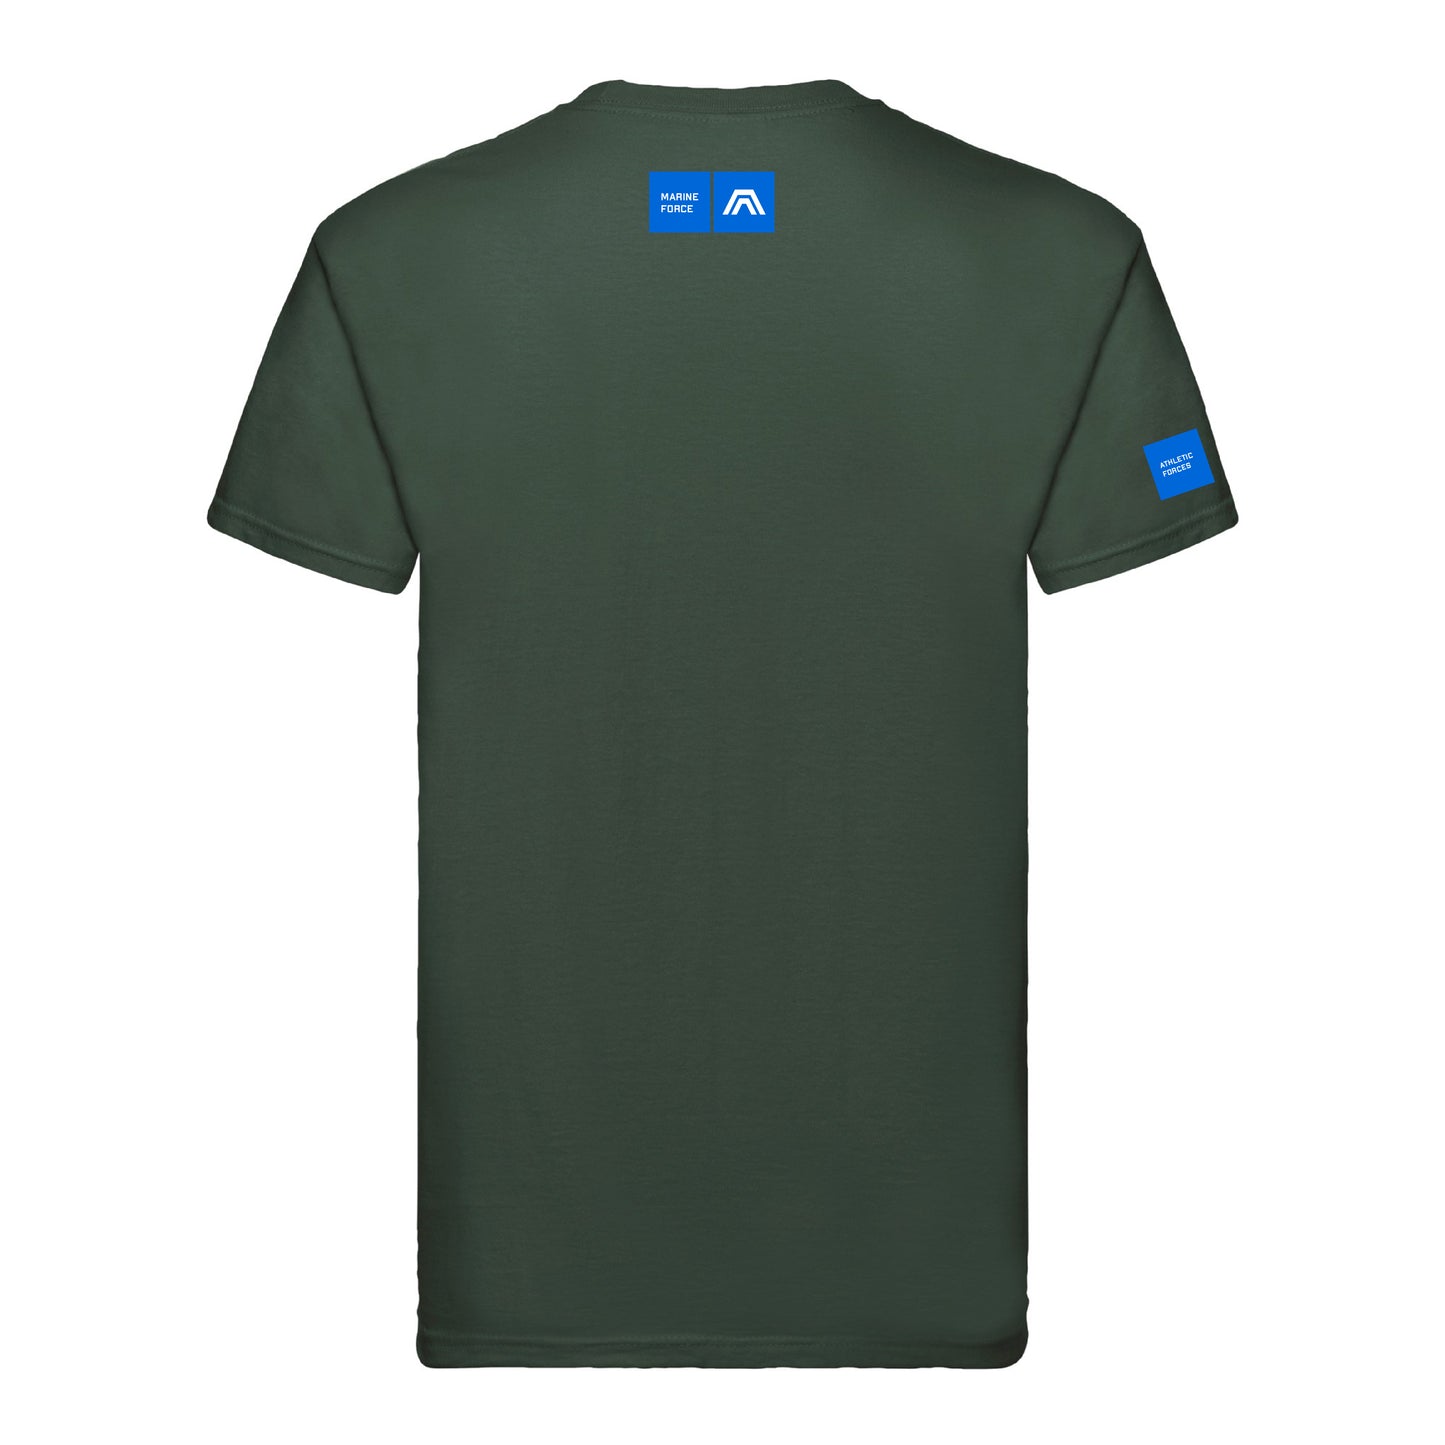 T-shirt à écusson Marine Force ®